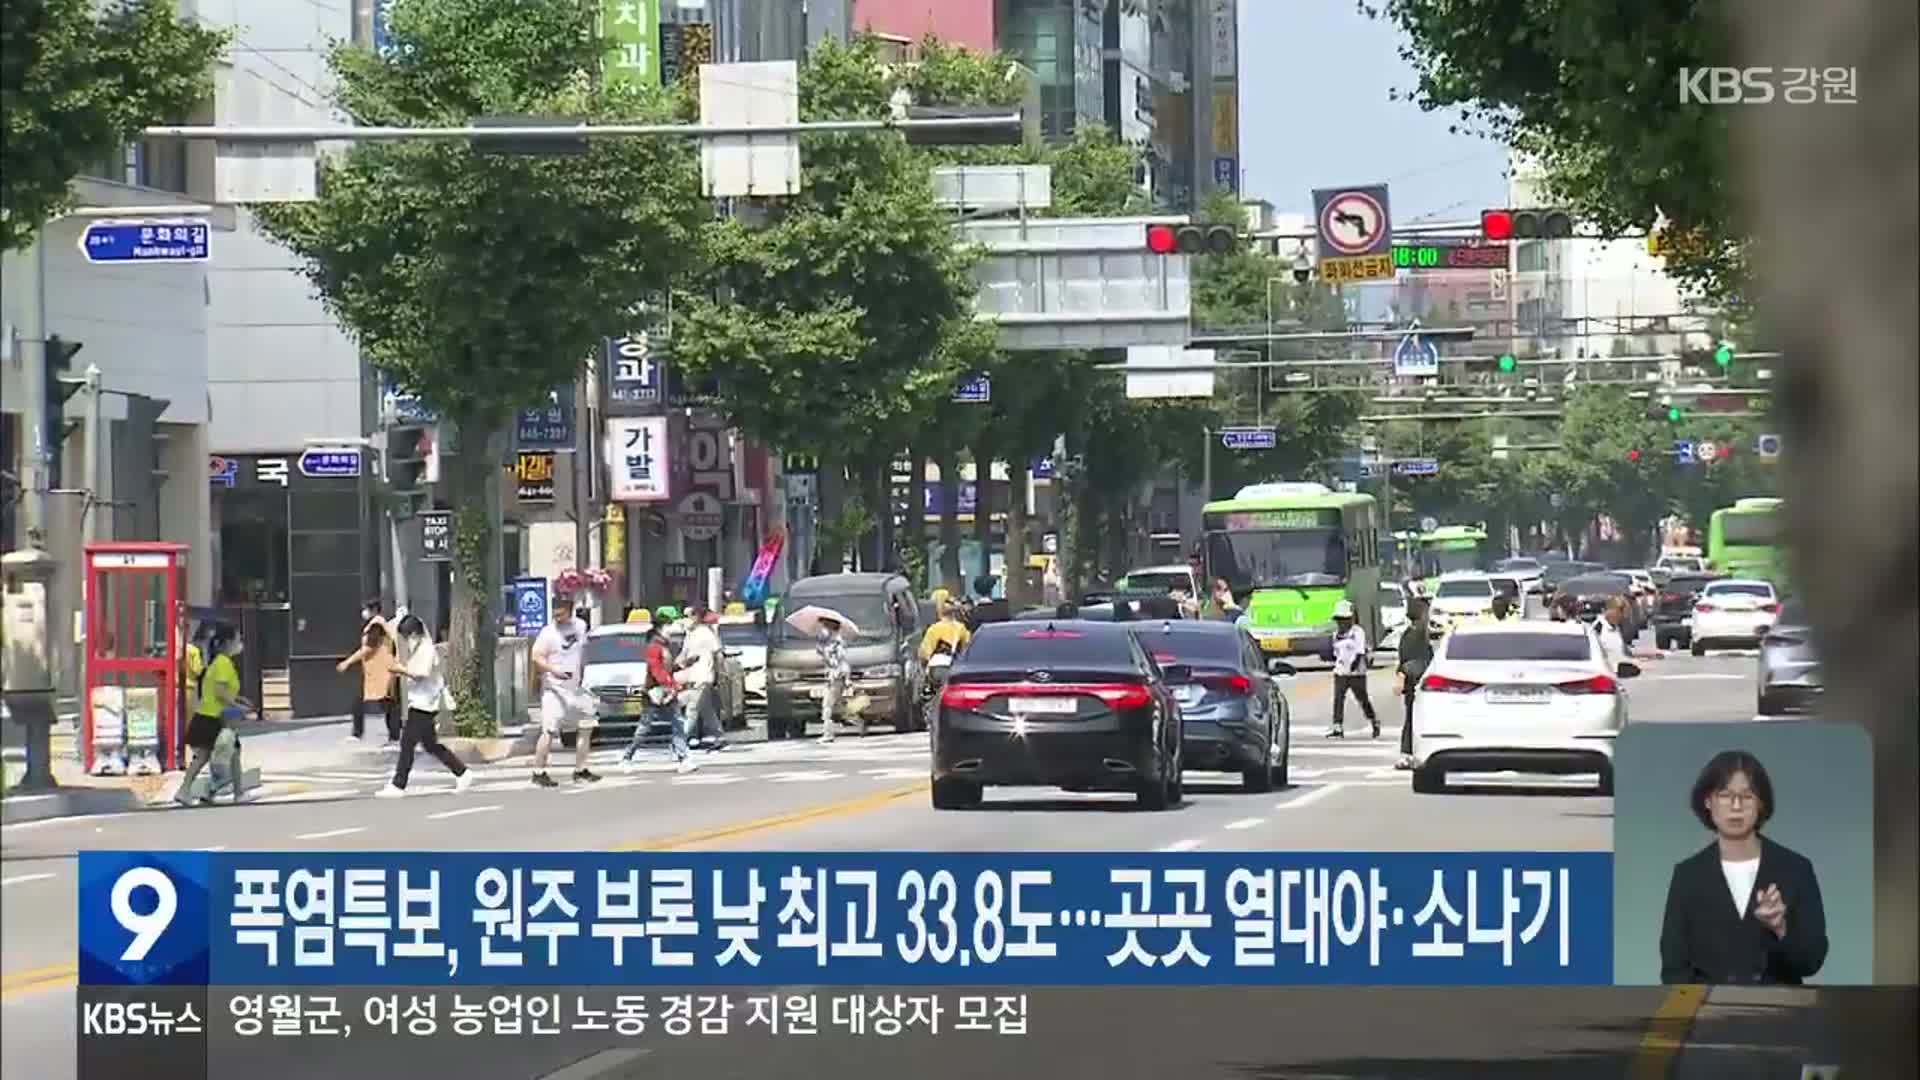 폭염특보, 원주 부론 낮 최고 33.8도…곳곳 열대야·소나기